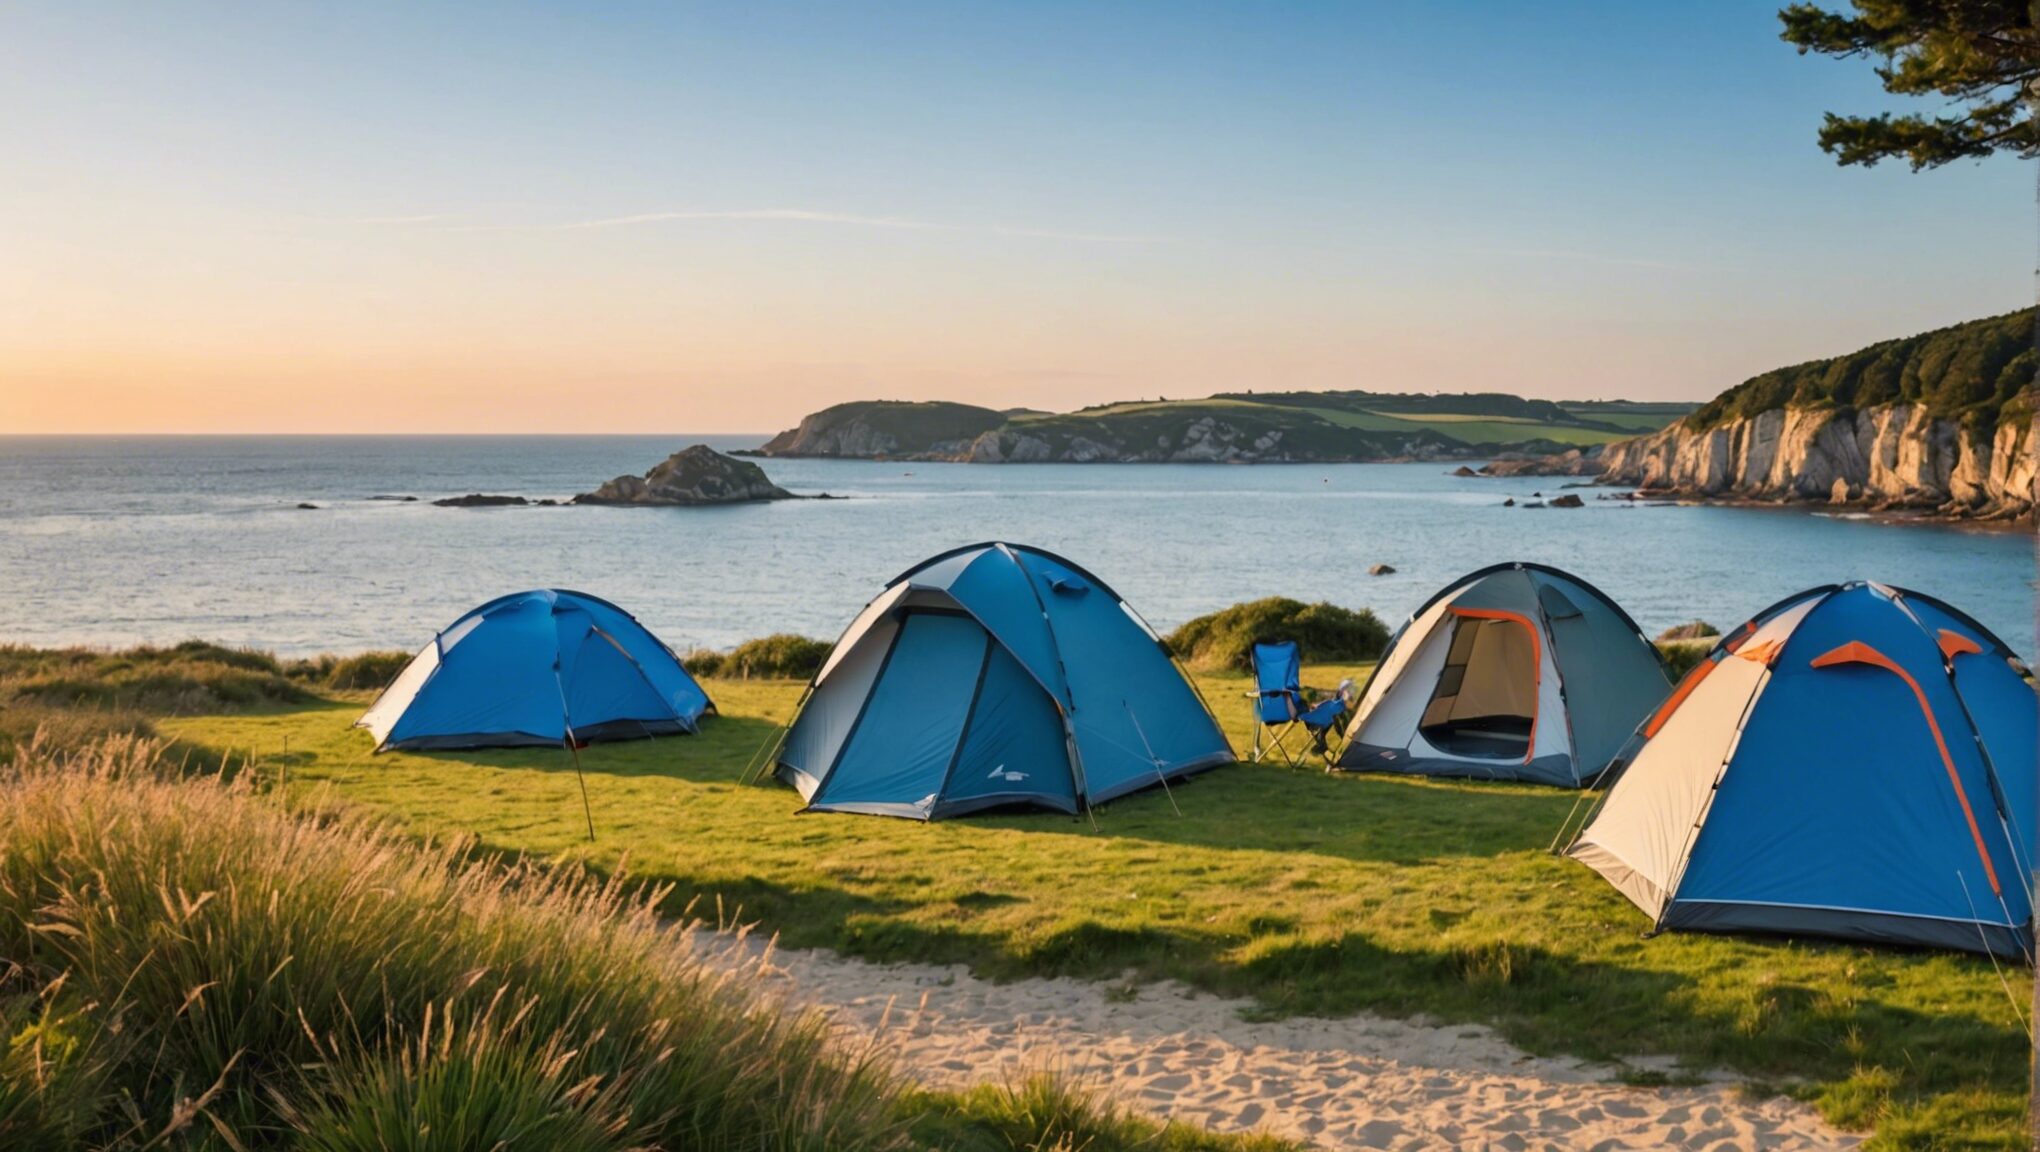 découvrez le secret ultime pour des vacances en camping en bretagne inoubliables en famille avec ce guide complet.